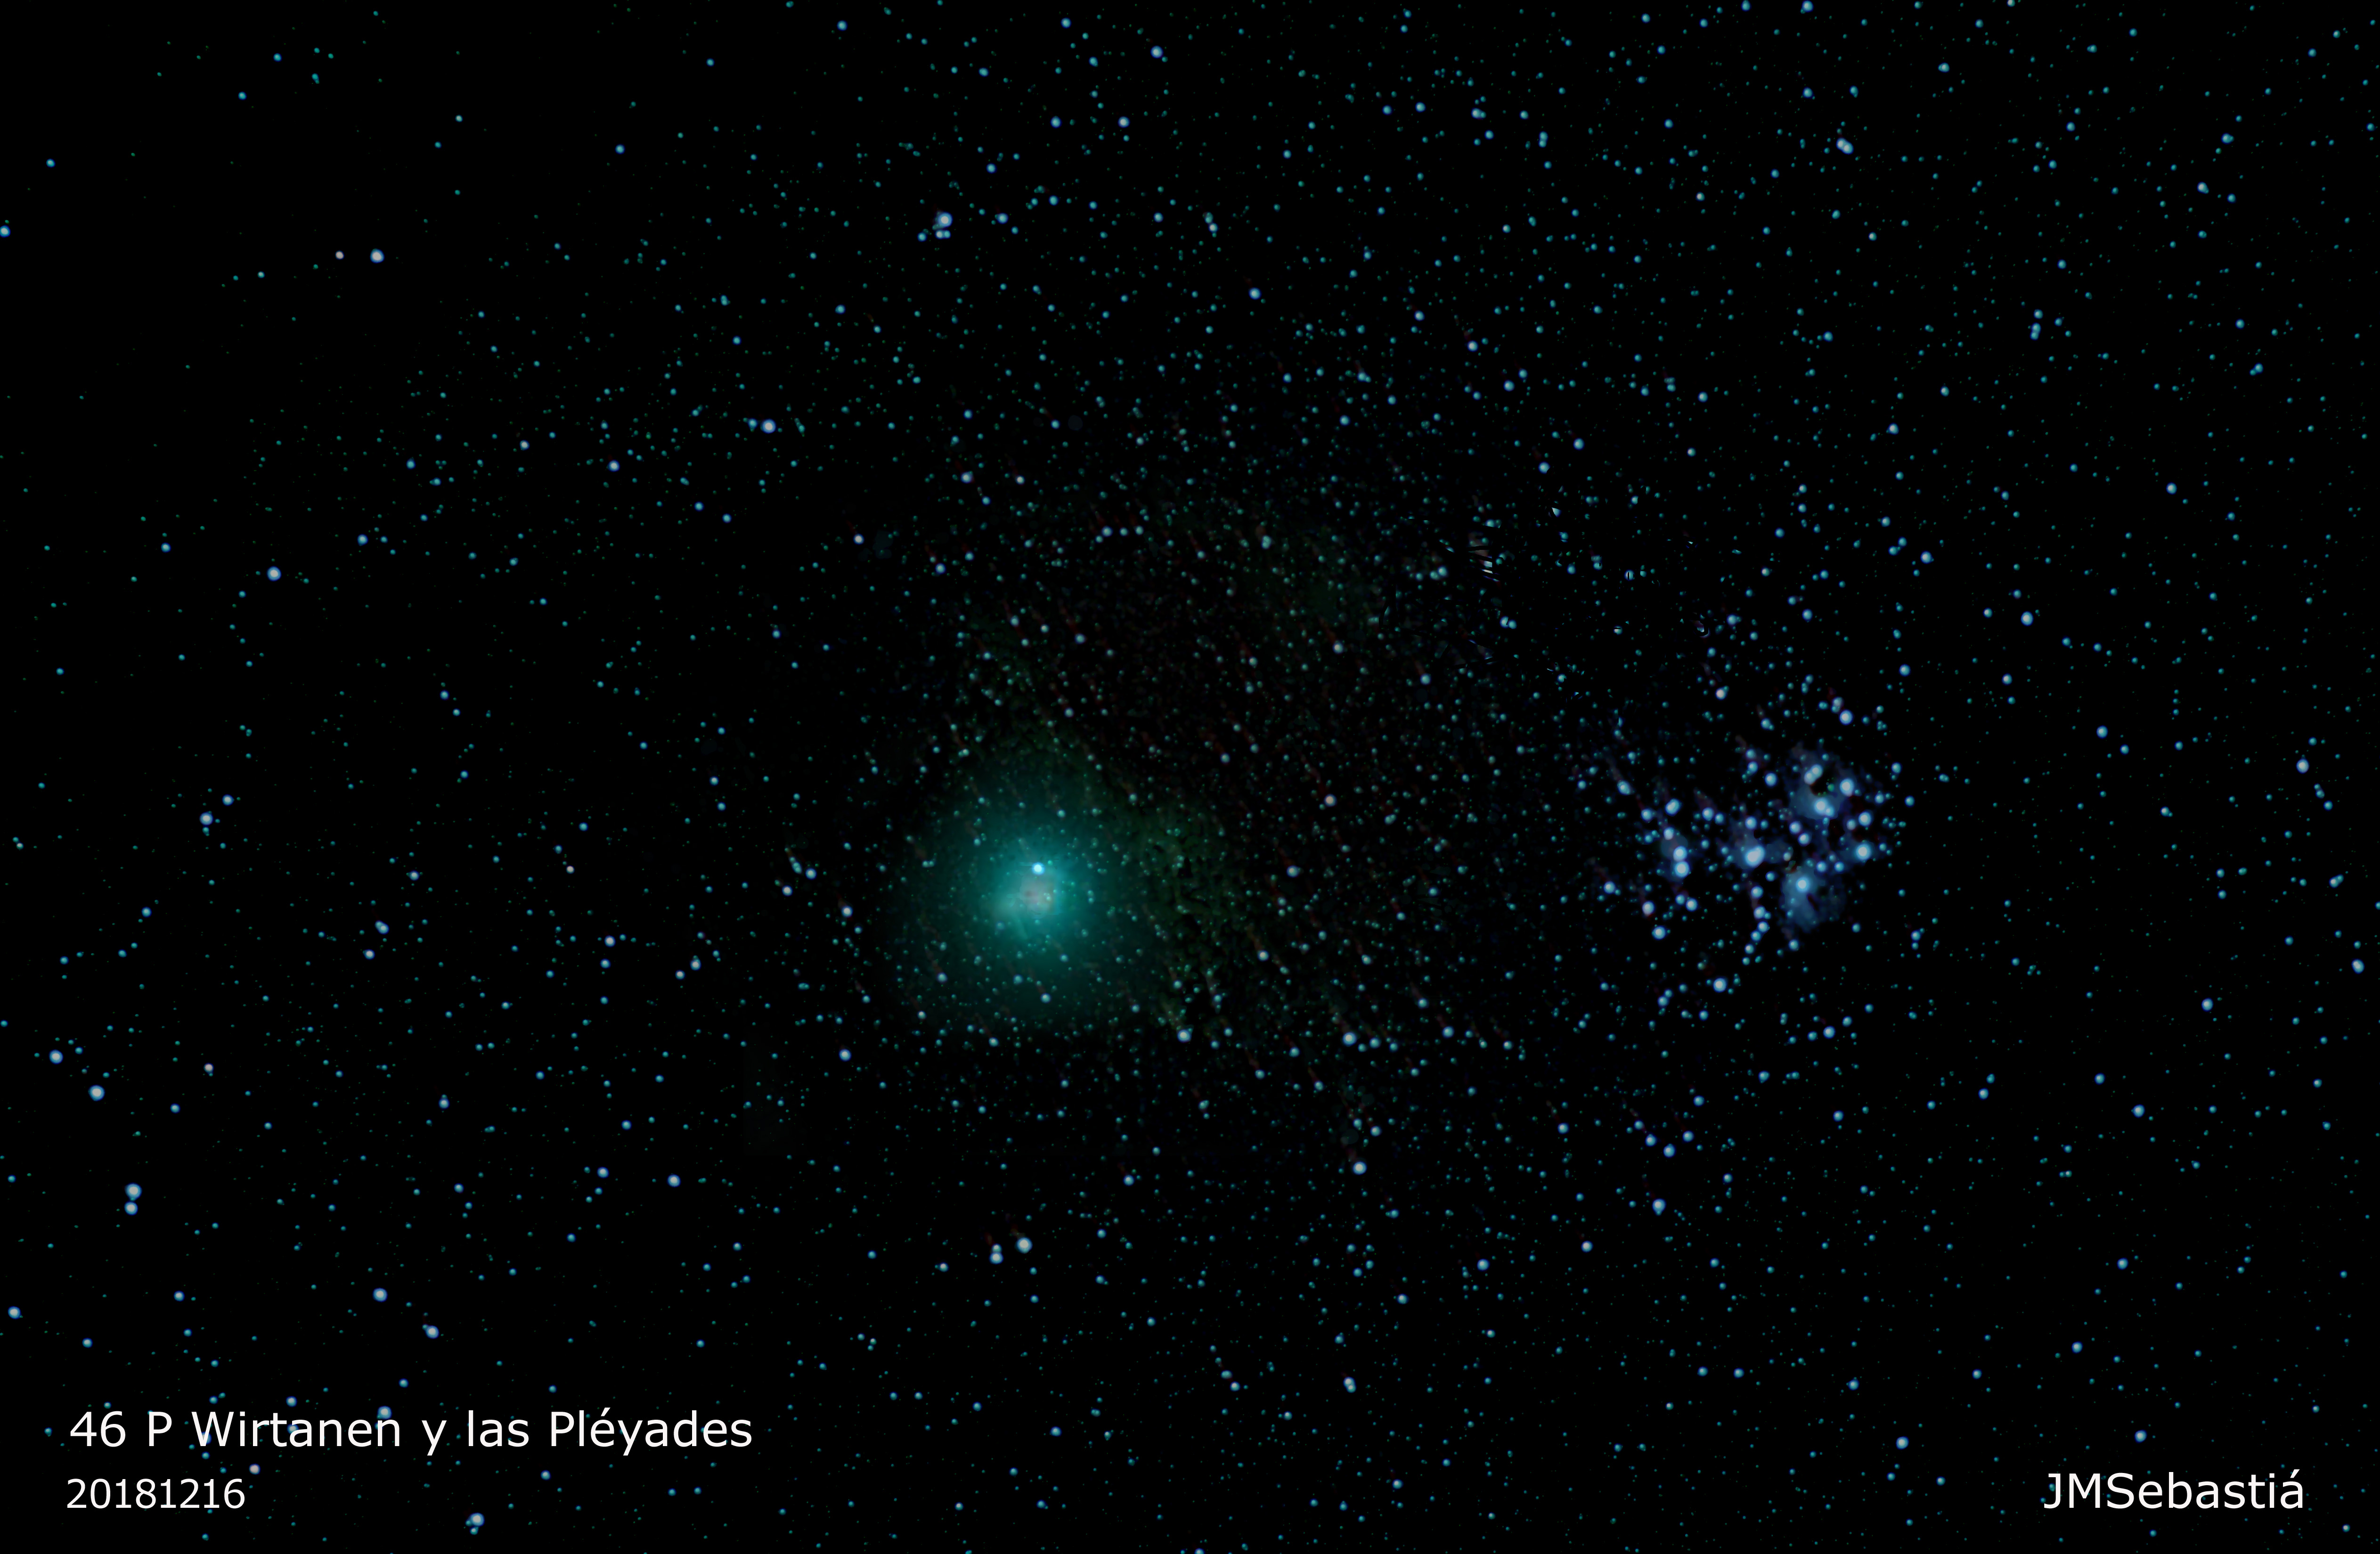 El Cometa 46 P Wirtanen besando a las Pléyades